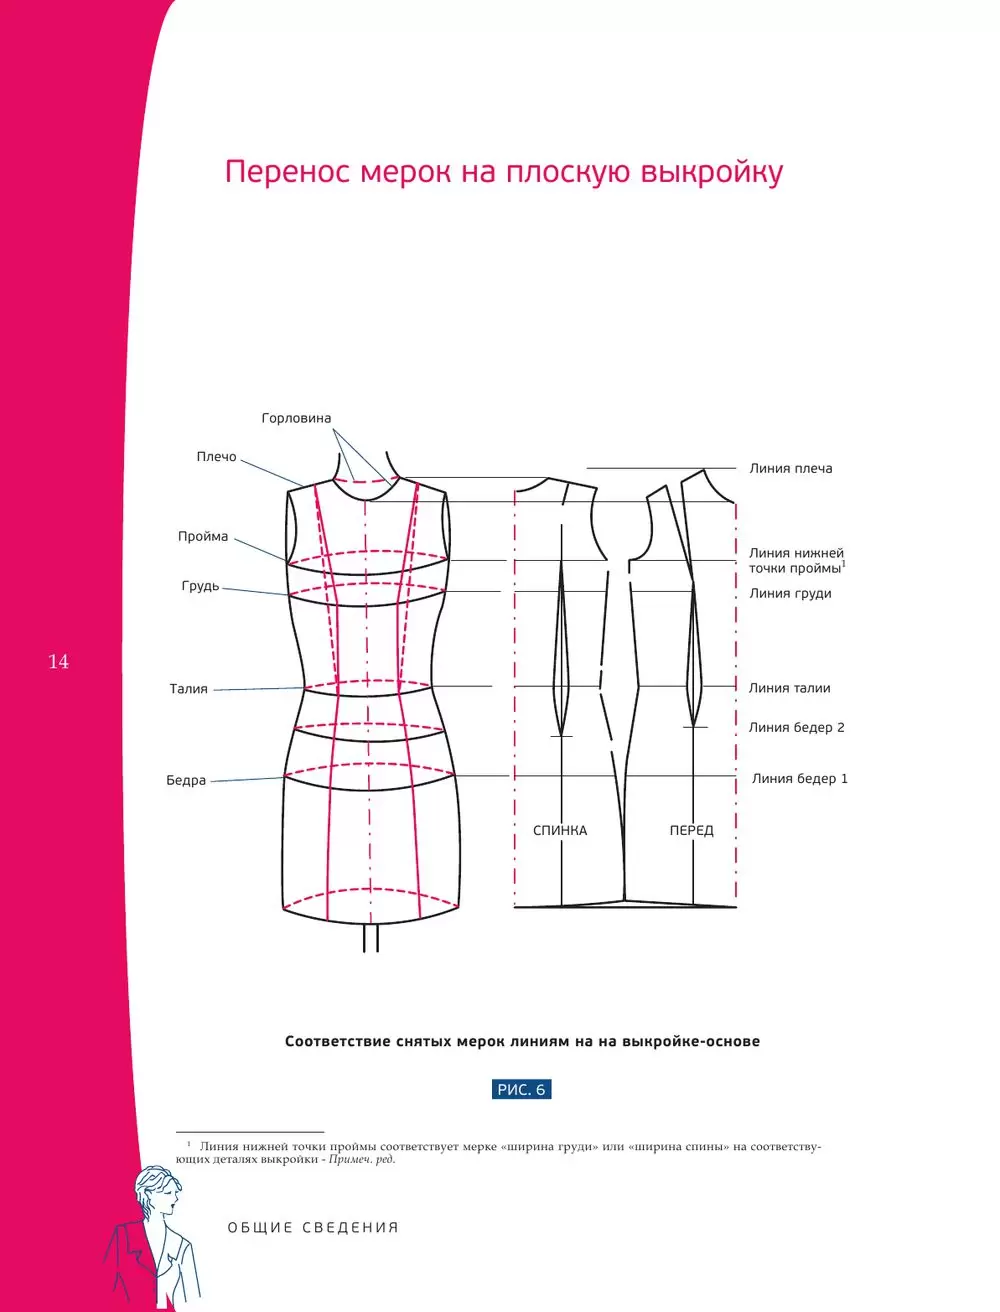 Курс одежды, курсы кроя и пошива одежды в Москве